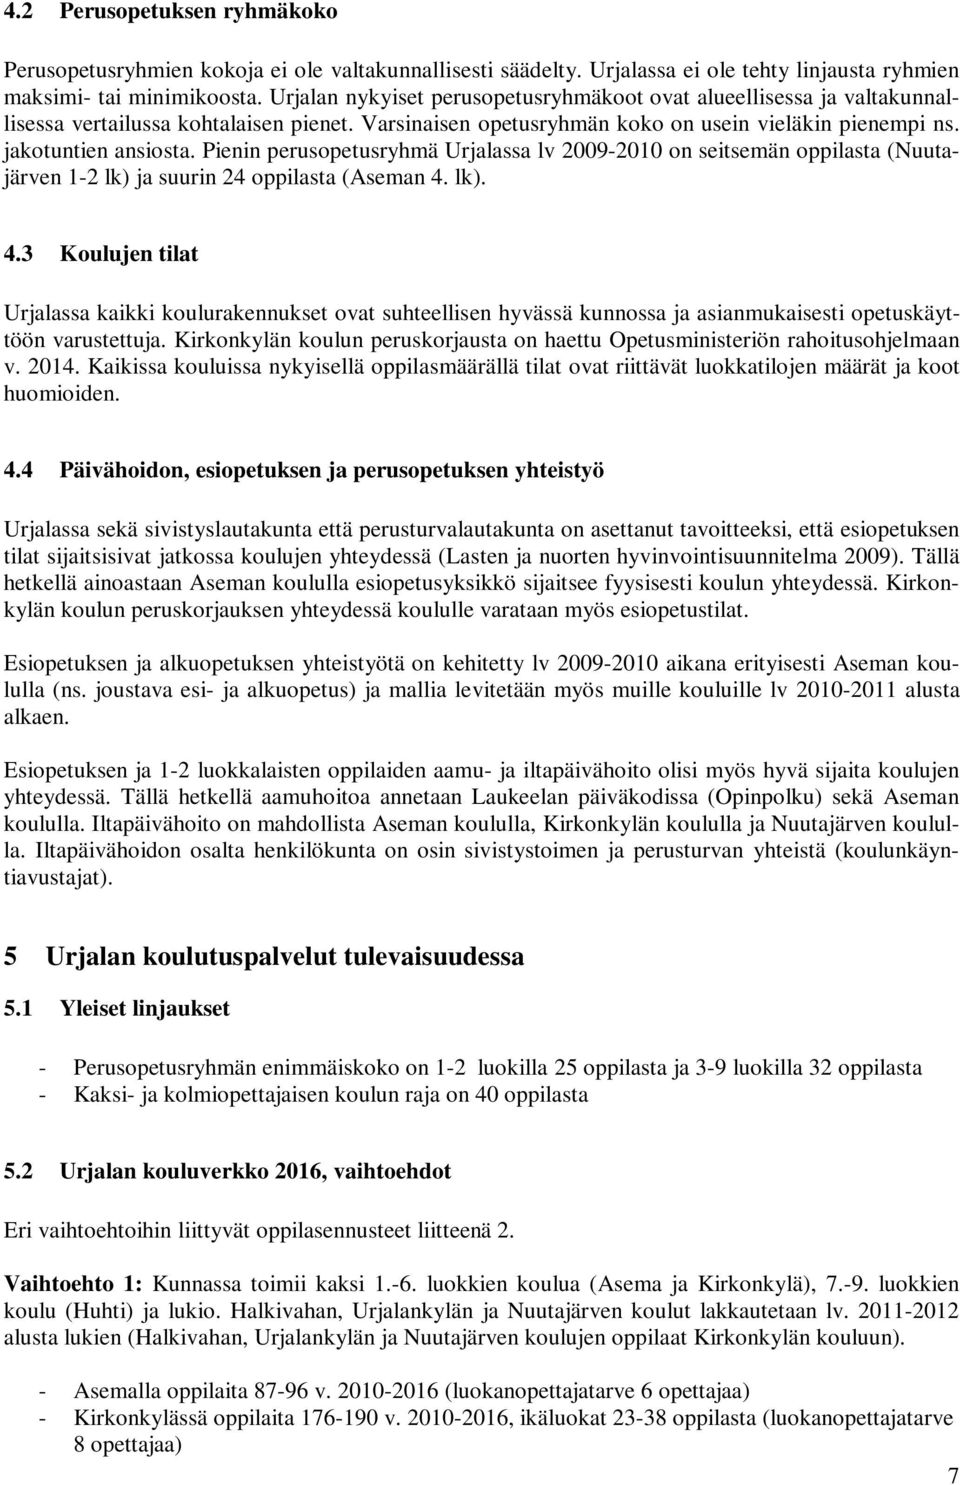 Pienin perusopetusryhmä Urjalassa lv 2009-2010 on seitsemän oppilasta (Nuutajärven 1-2 lk) ja suurin 24 oppilasta (Aseman 4.